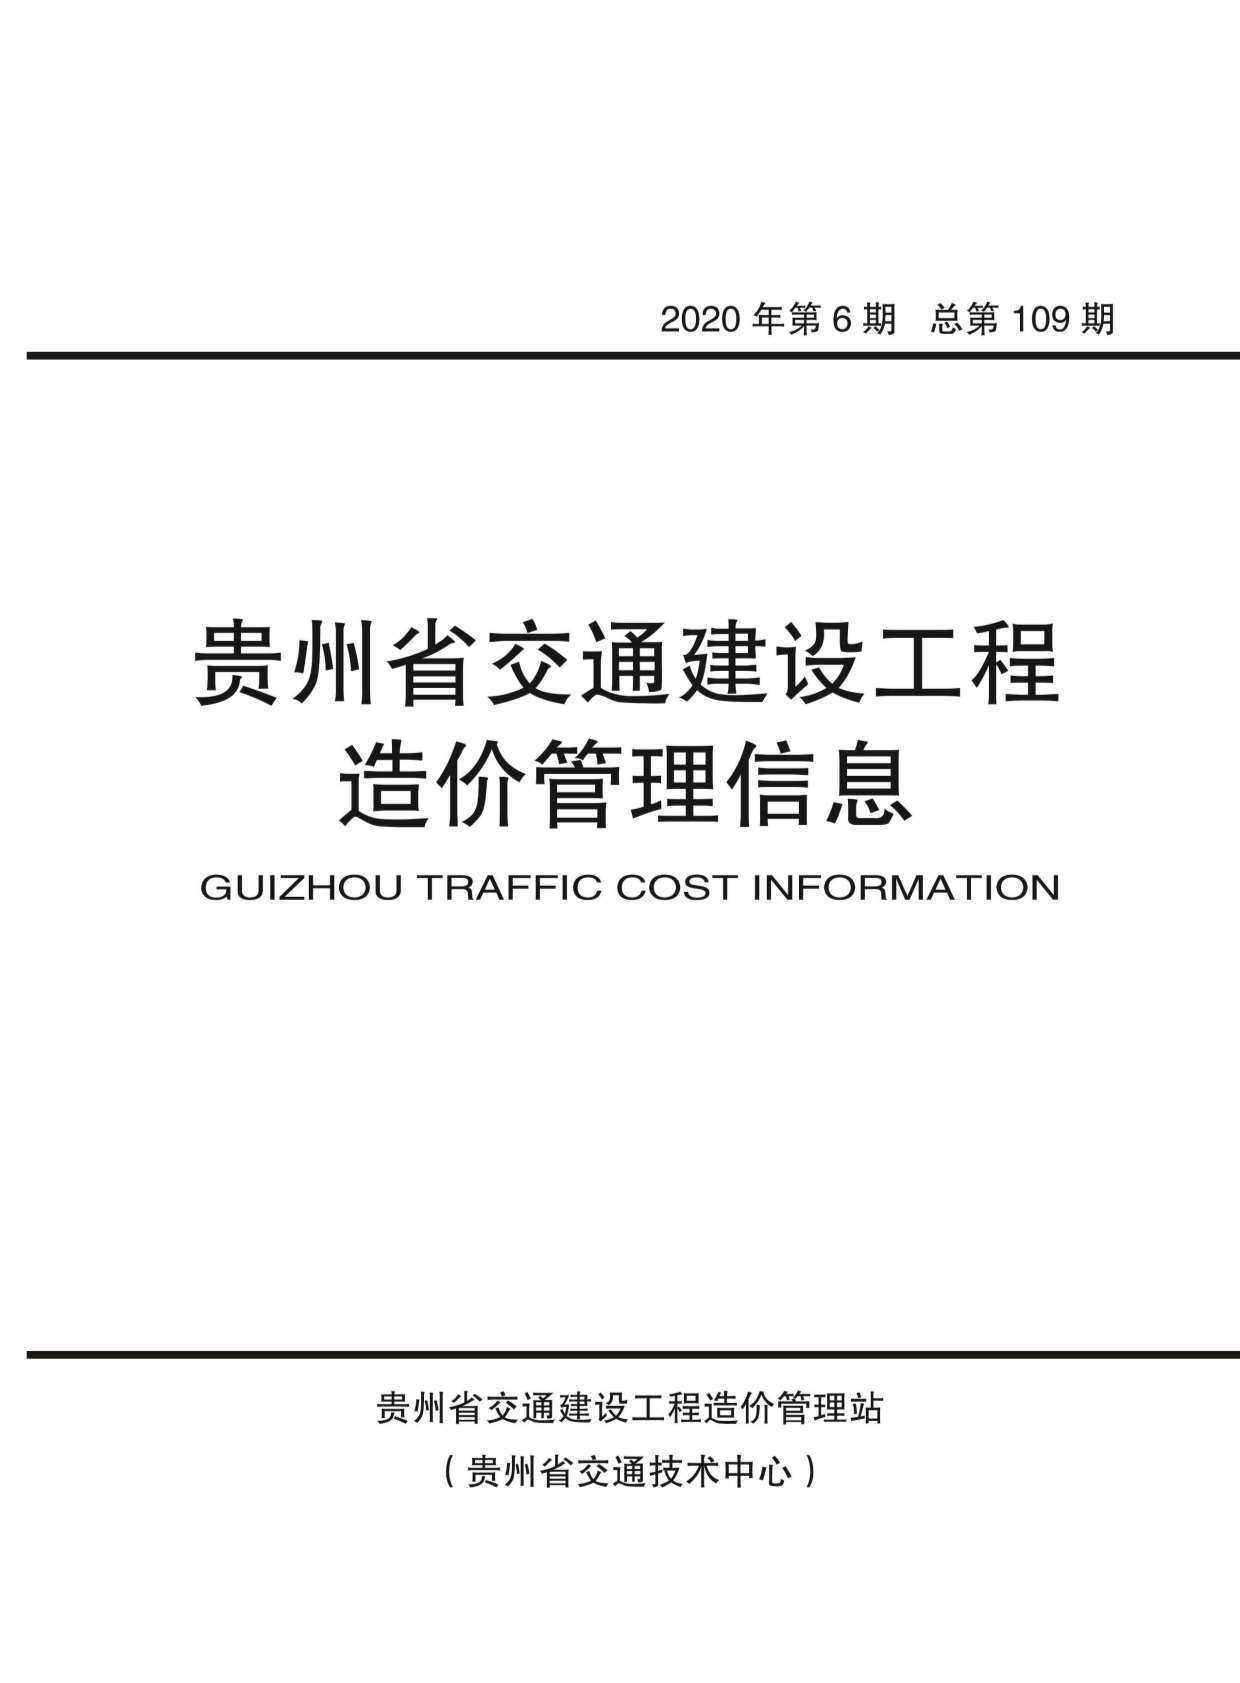 贵州省2020年6月交通工程造价信息期刊